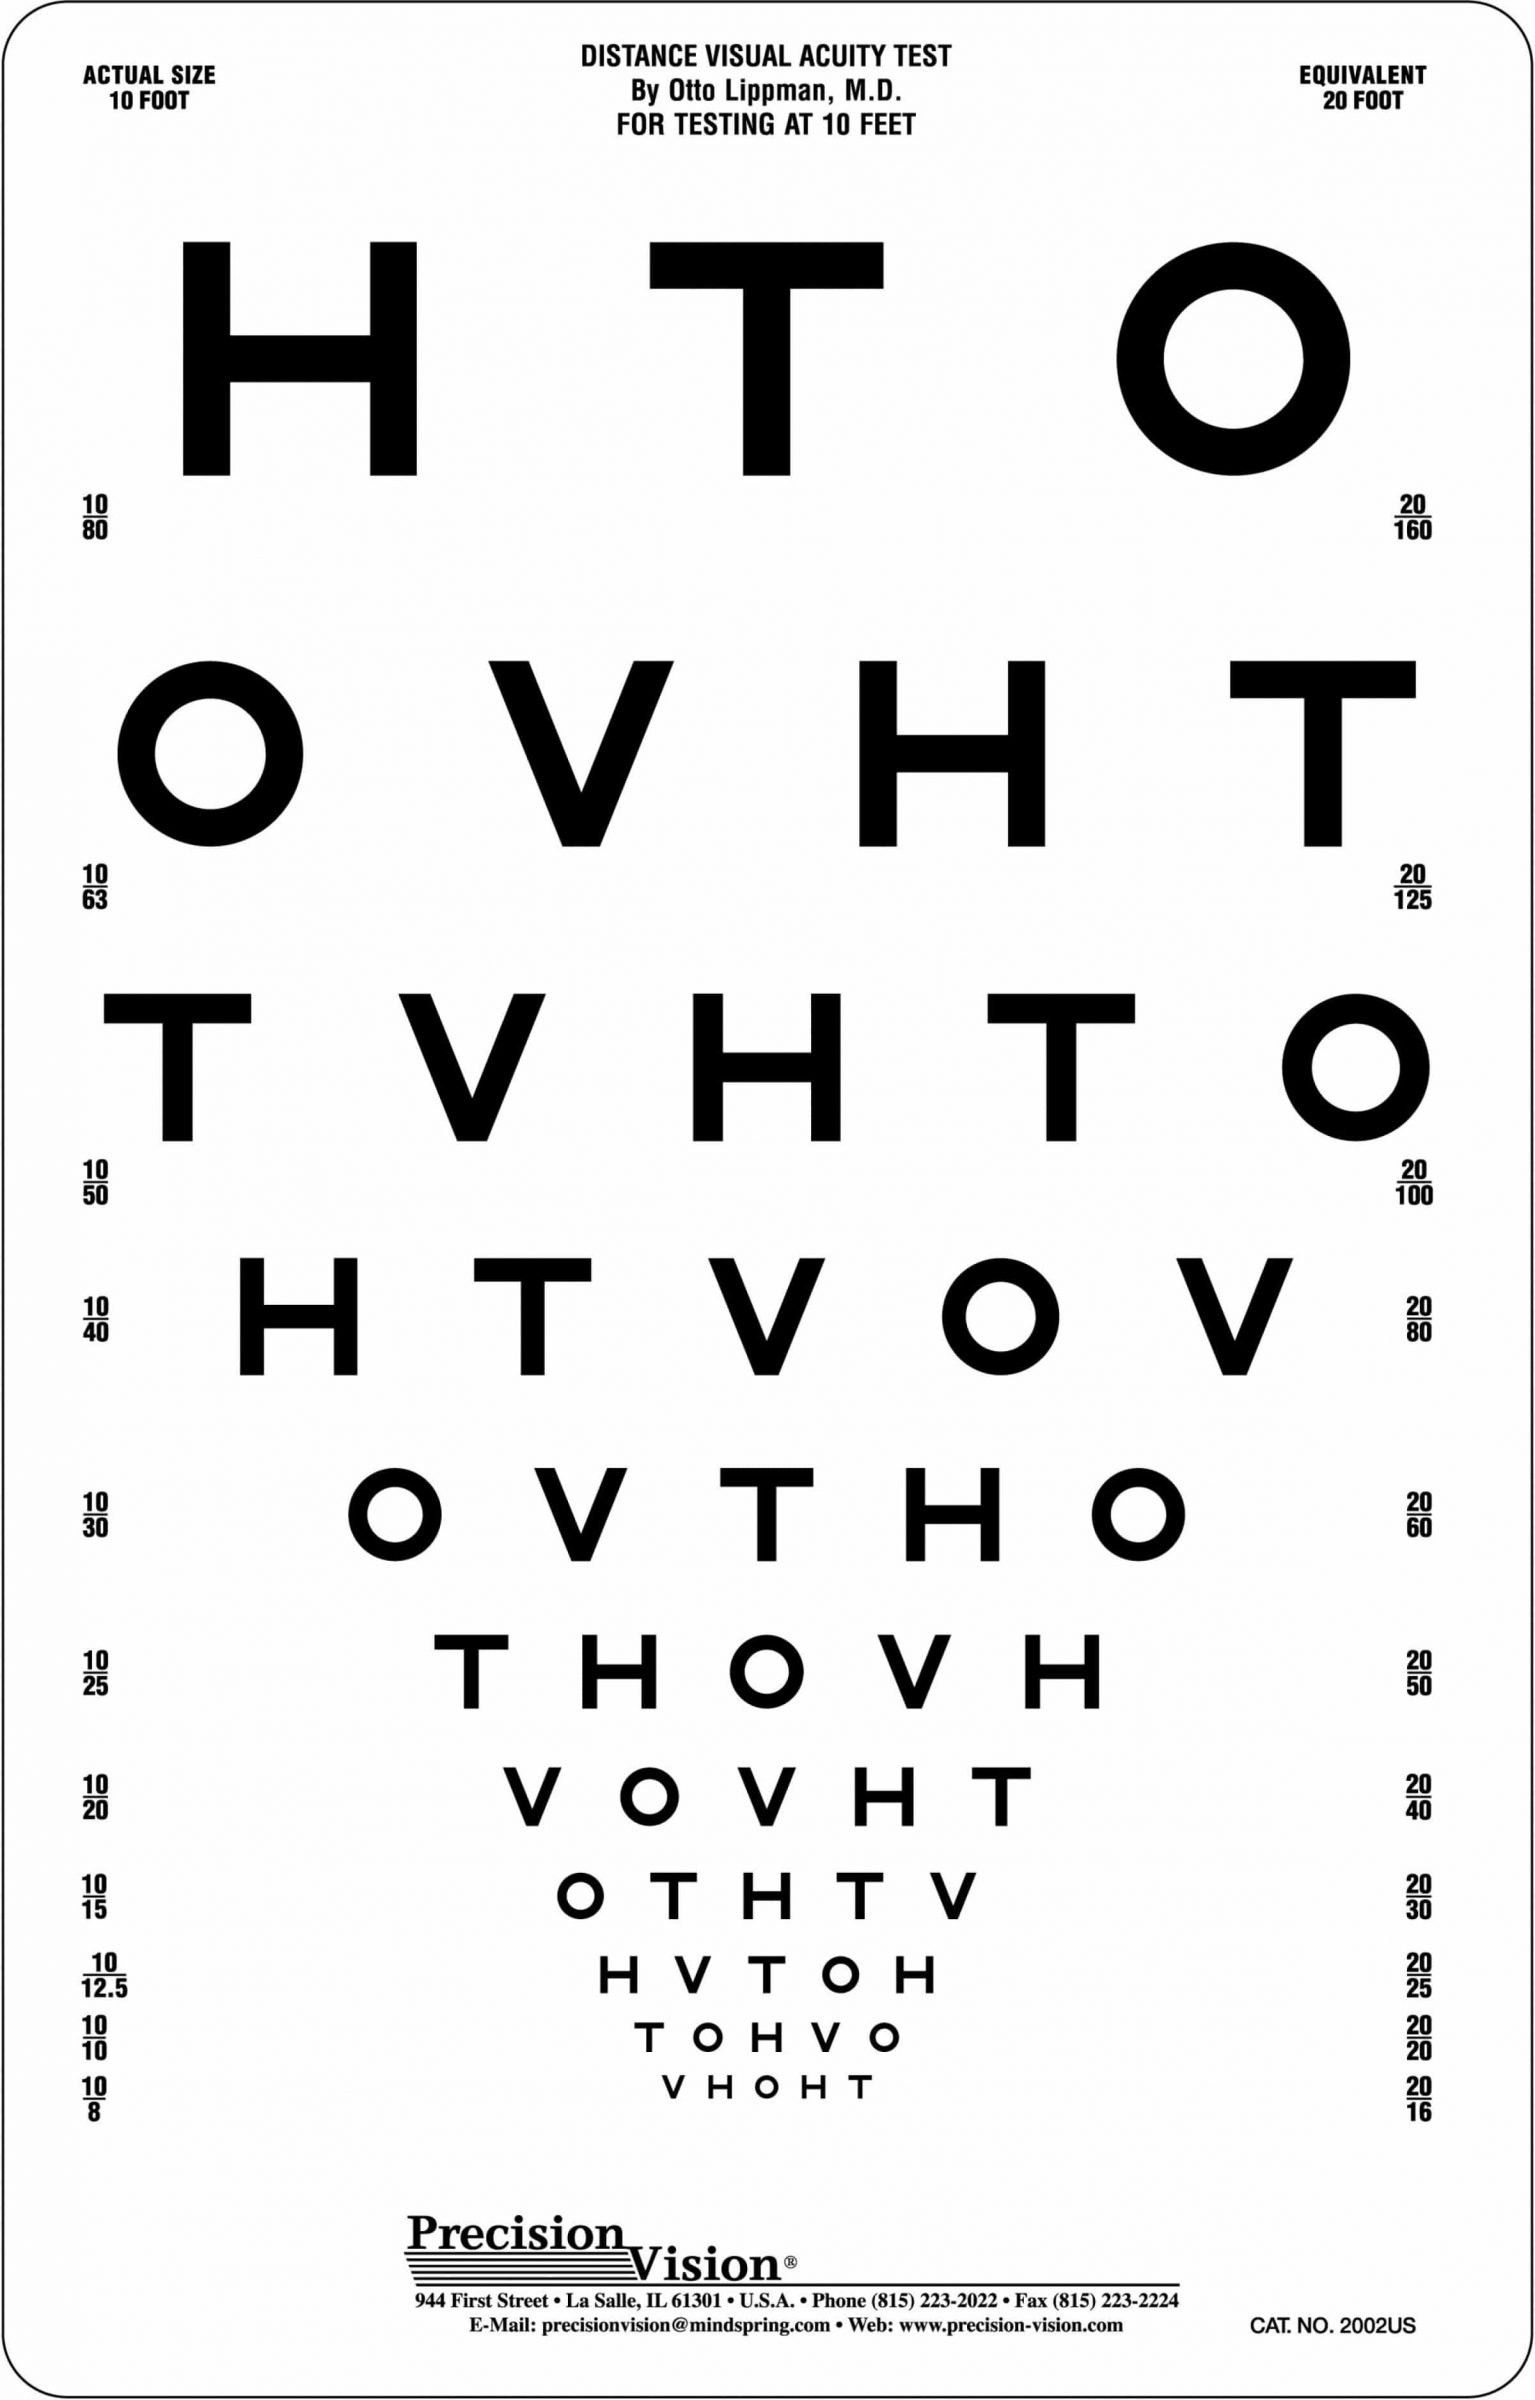 Snellen Visual Acuity Eye Chart for 10 Feet Distance